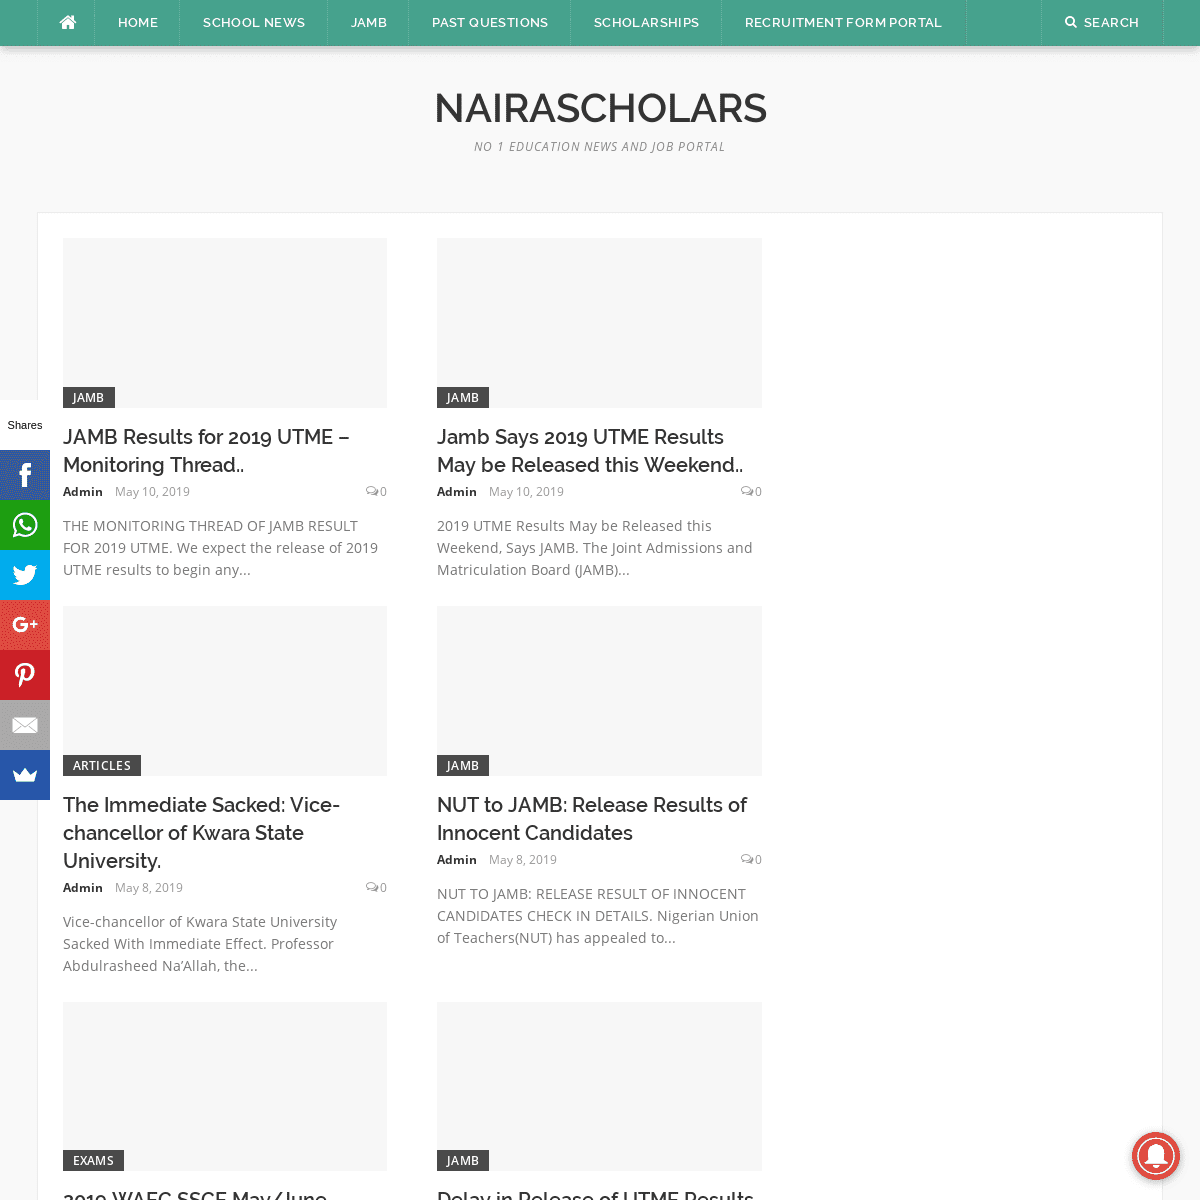 A complete backup of nairascholars.com.ng